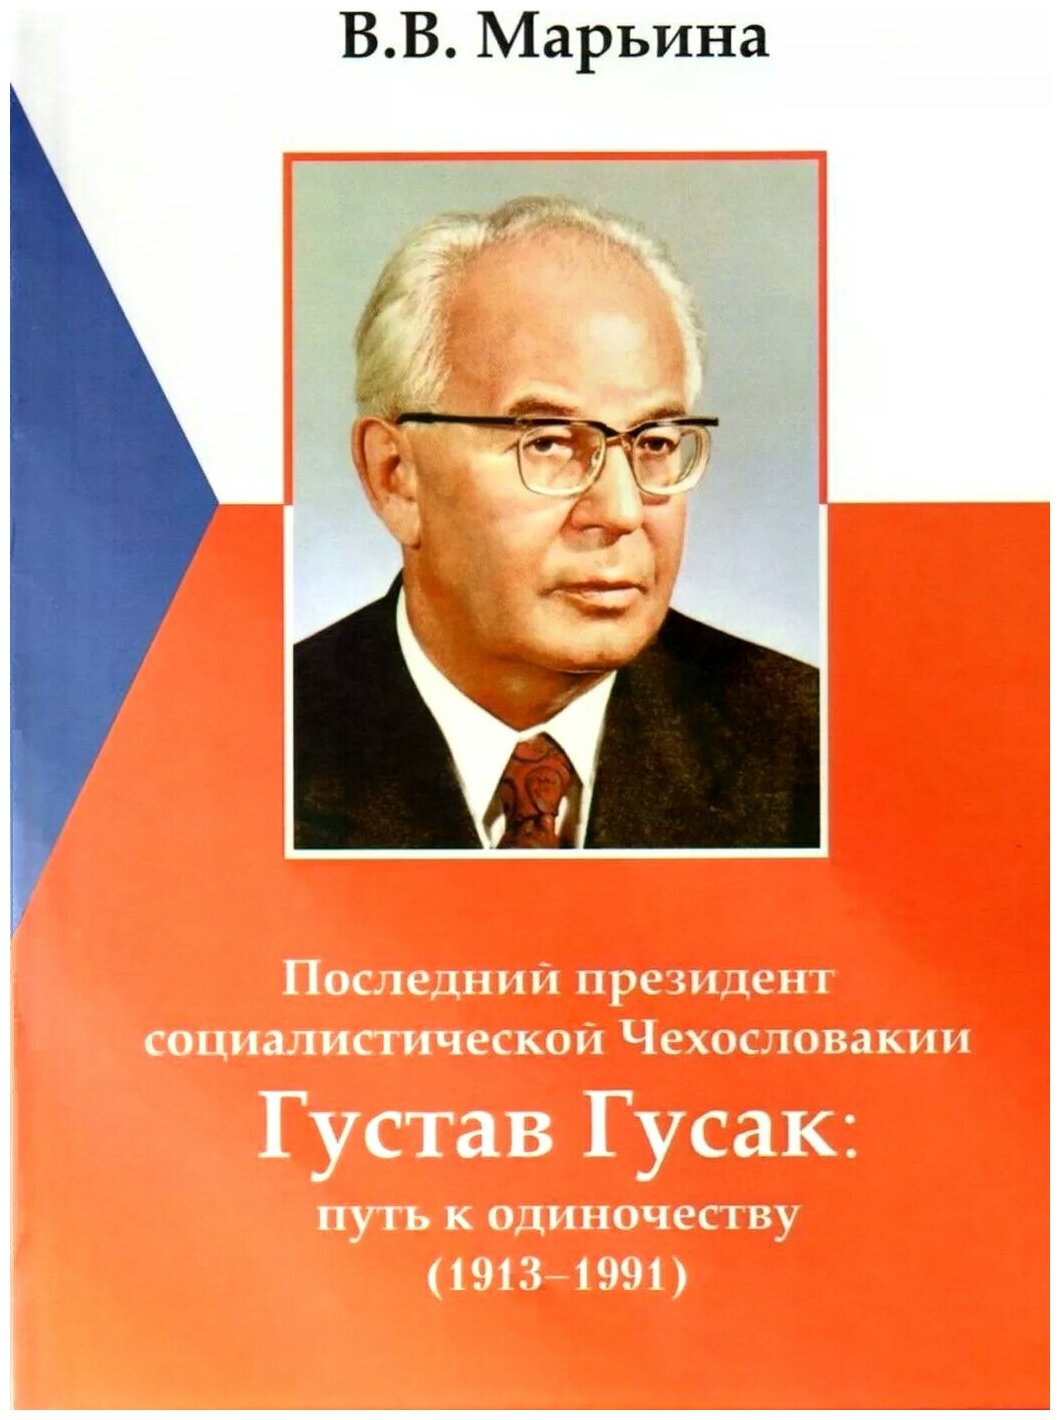 Последний президент социалистической Чехословакии Г.Гусак - фото №1